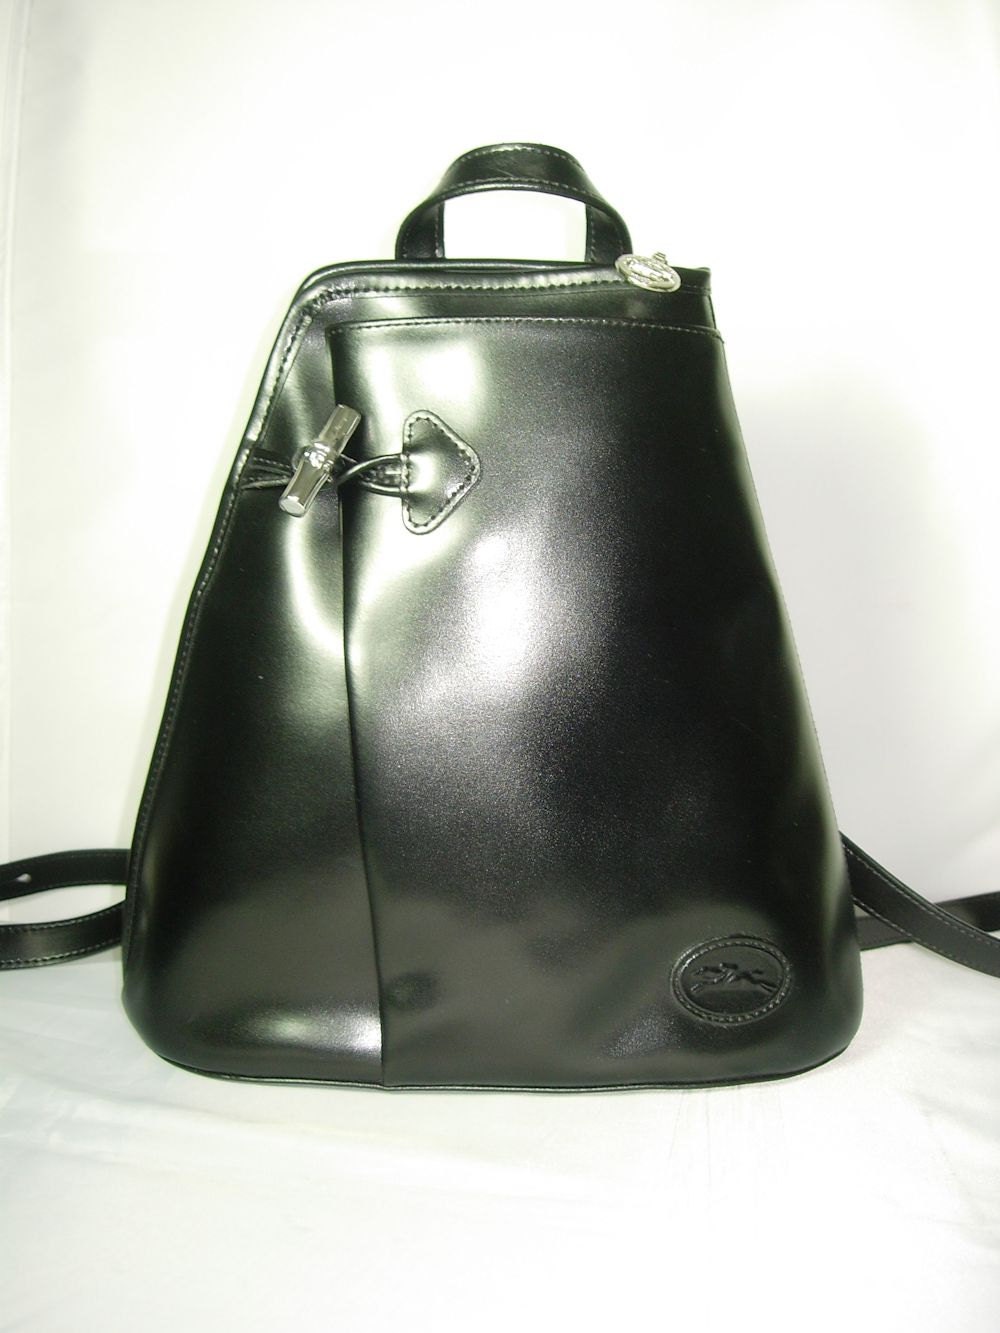 Vintage Longchamp Black Leather Backpack Handbag Made in